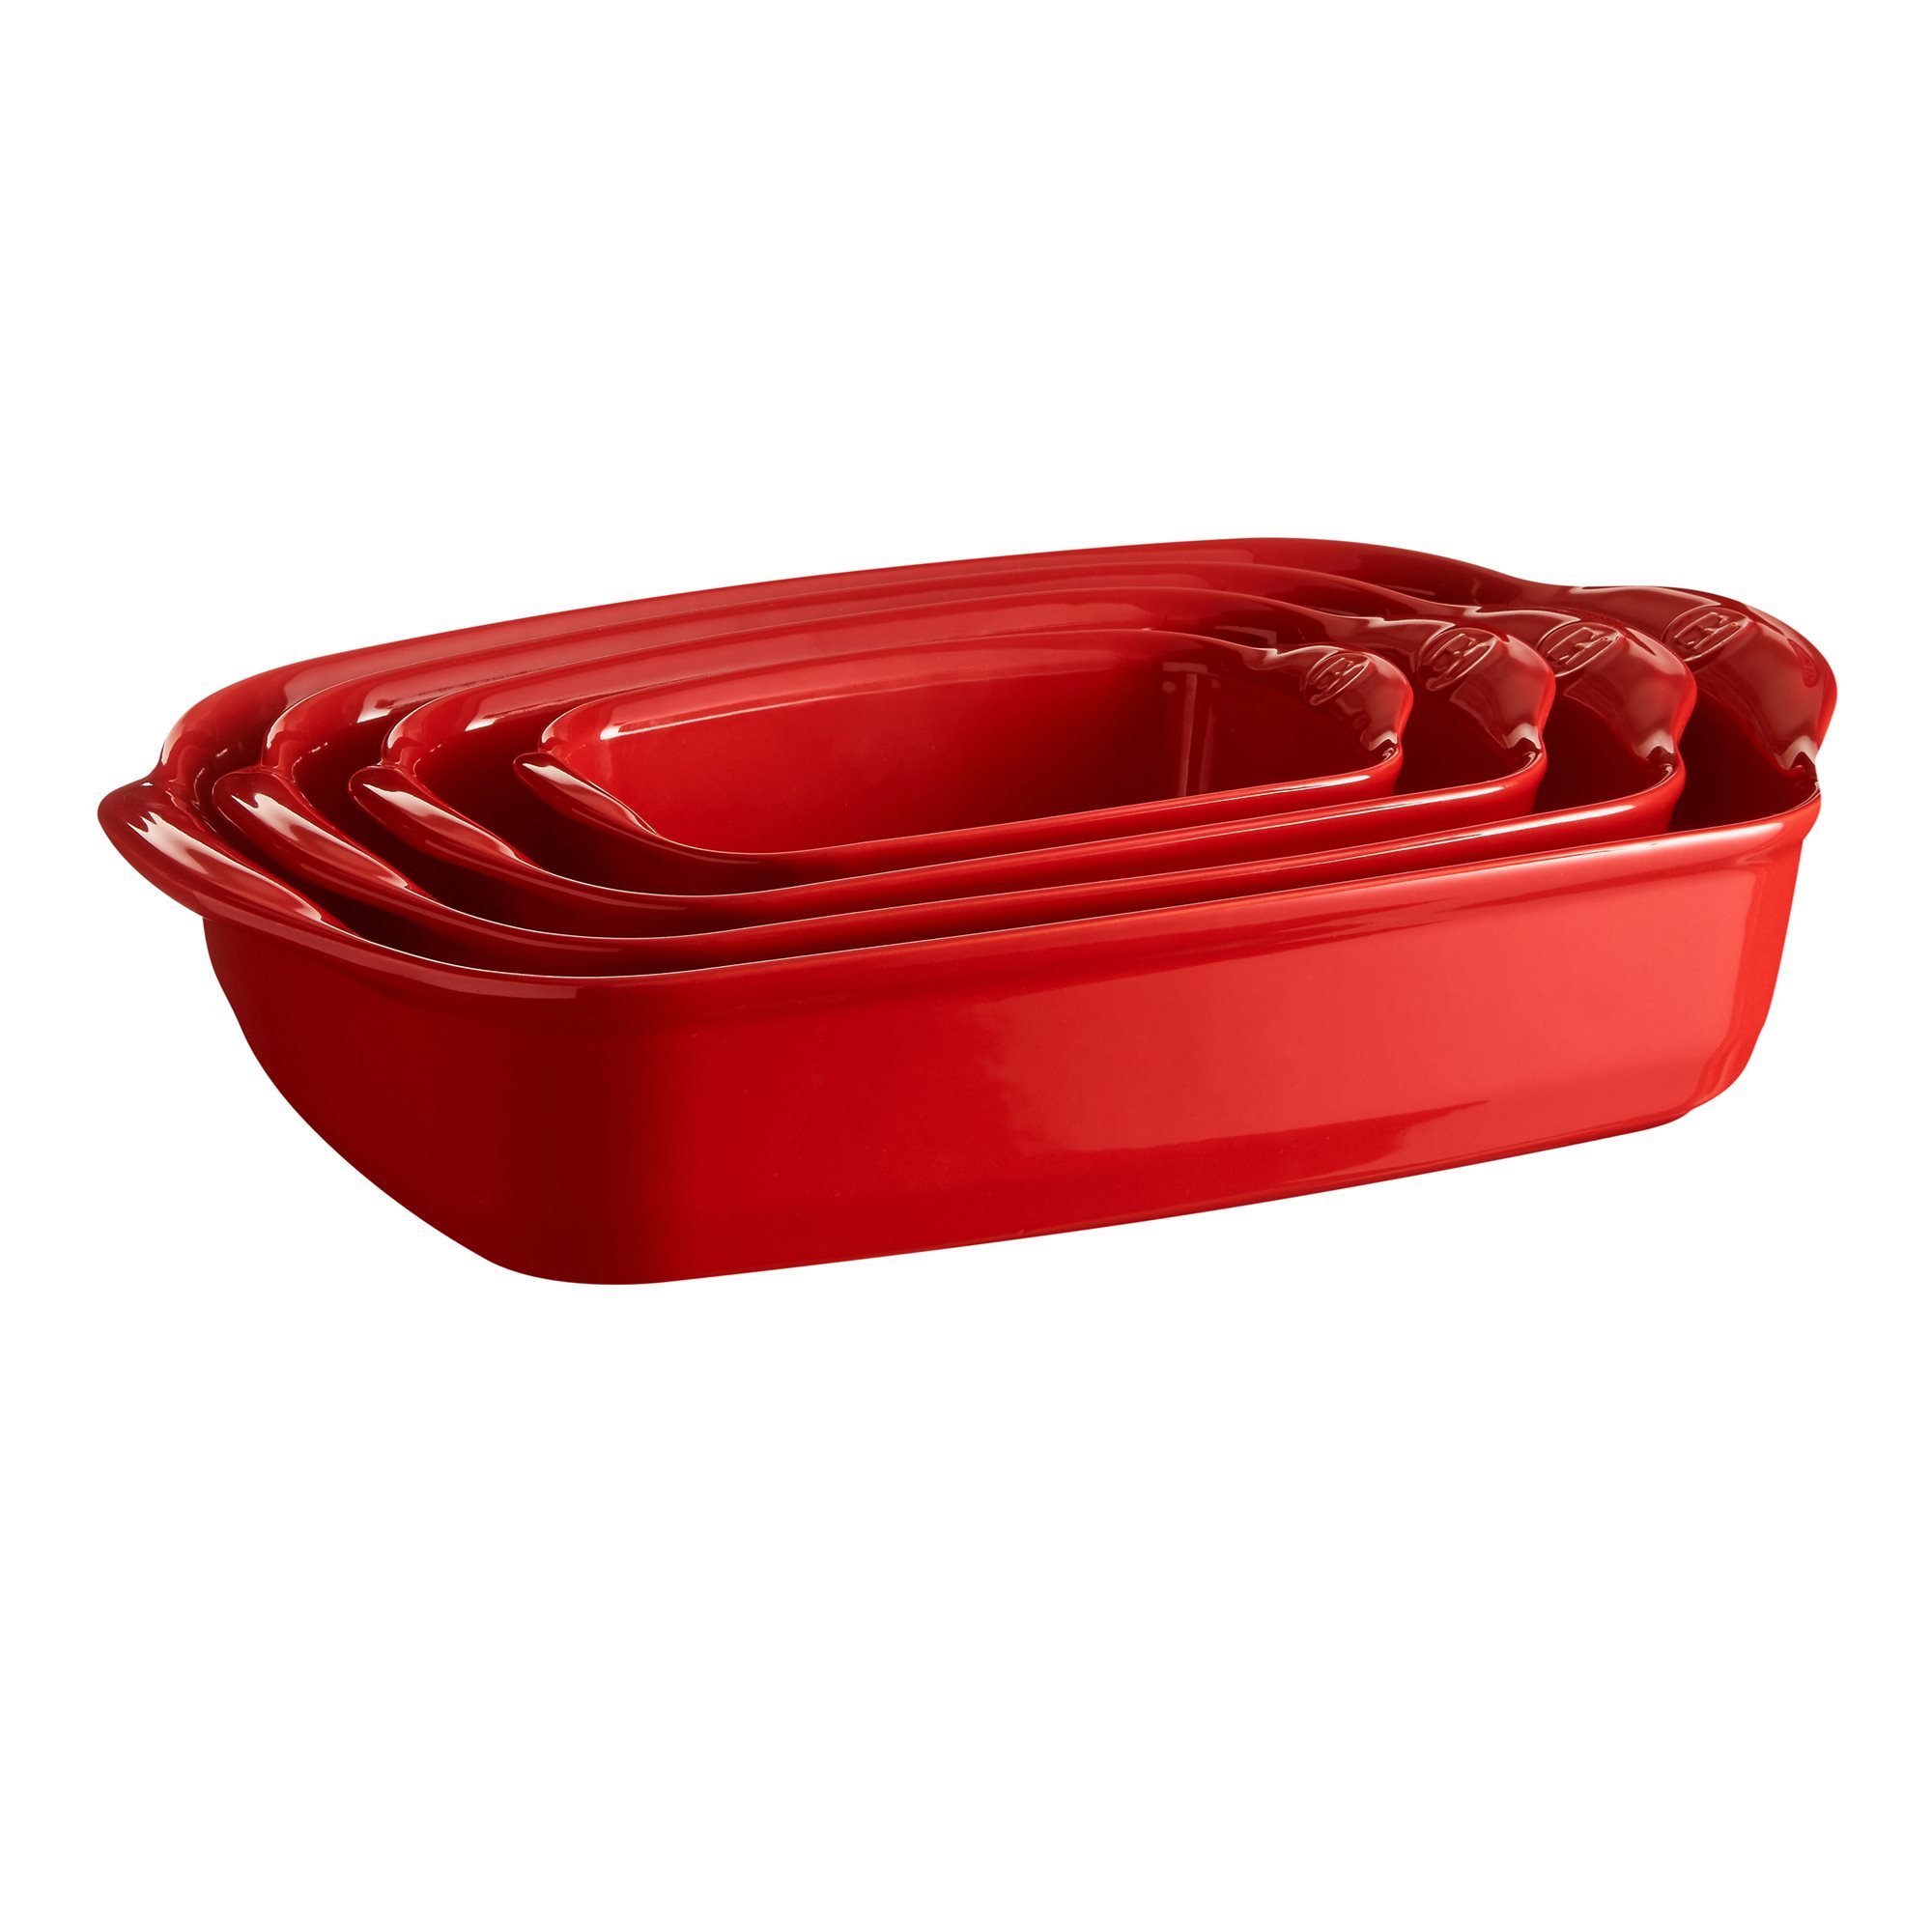 Staub Cherry Red Ceramic Rectangular Baking Dish 6.5 x 8.5